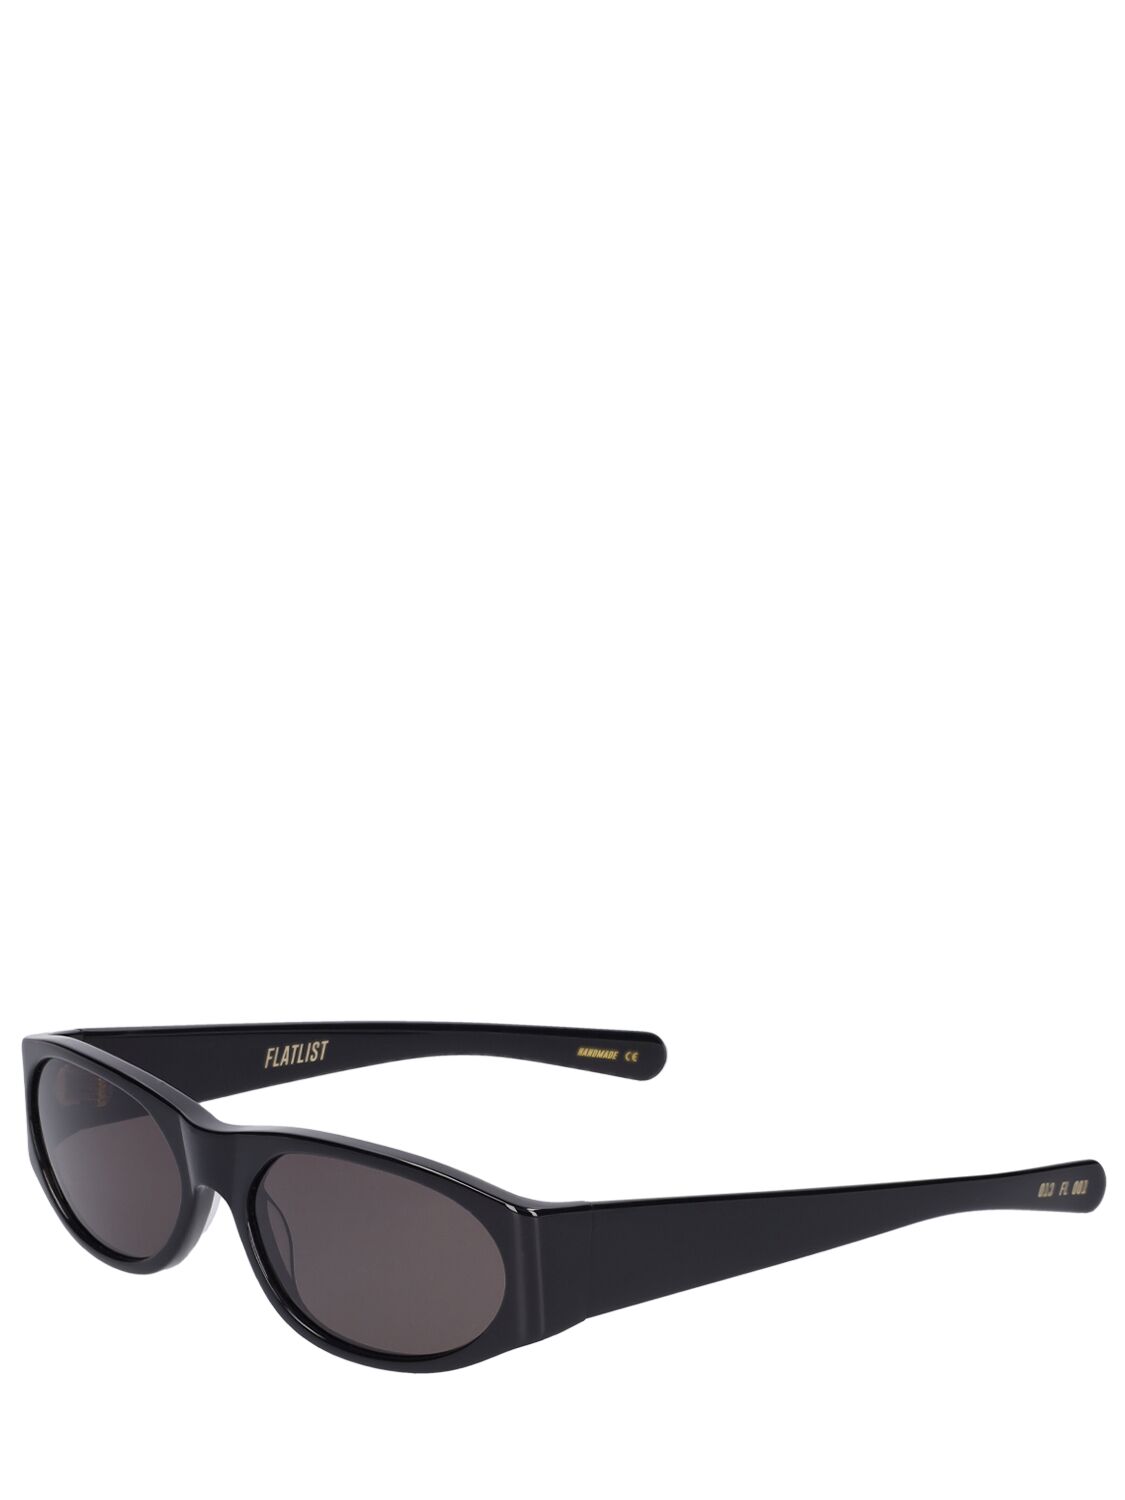 Shop Flatlist Eyewear Eddie Kyu Sunglasses In Schwarz